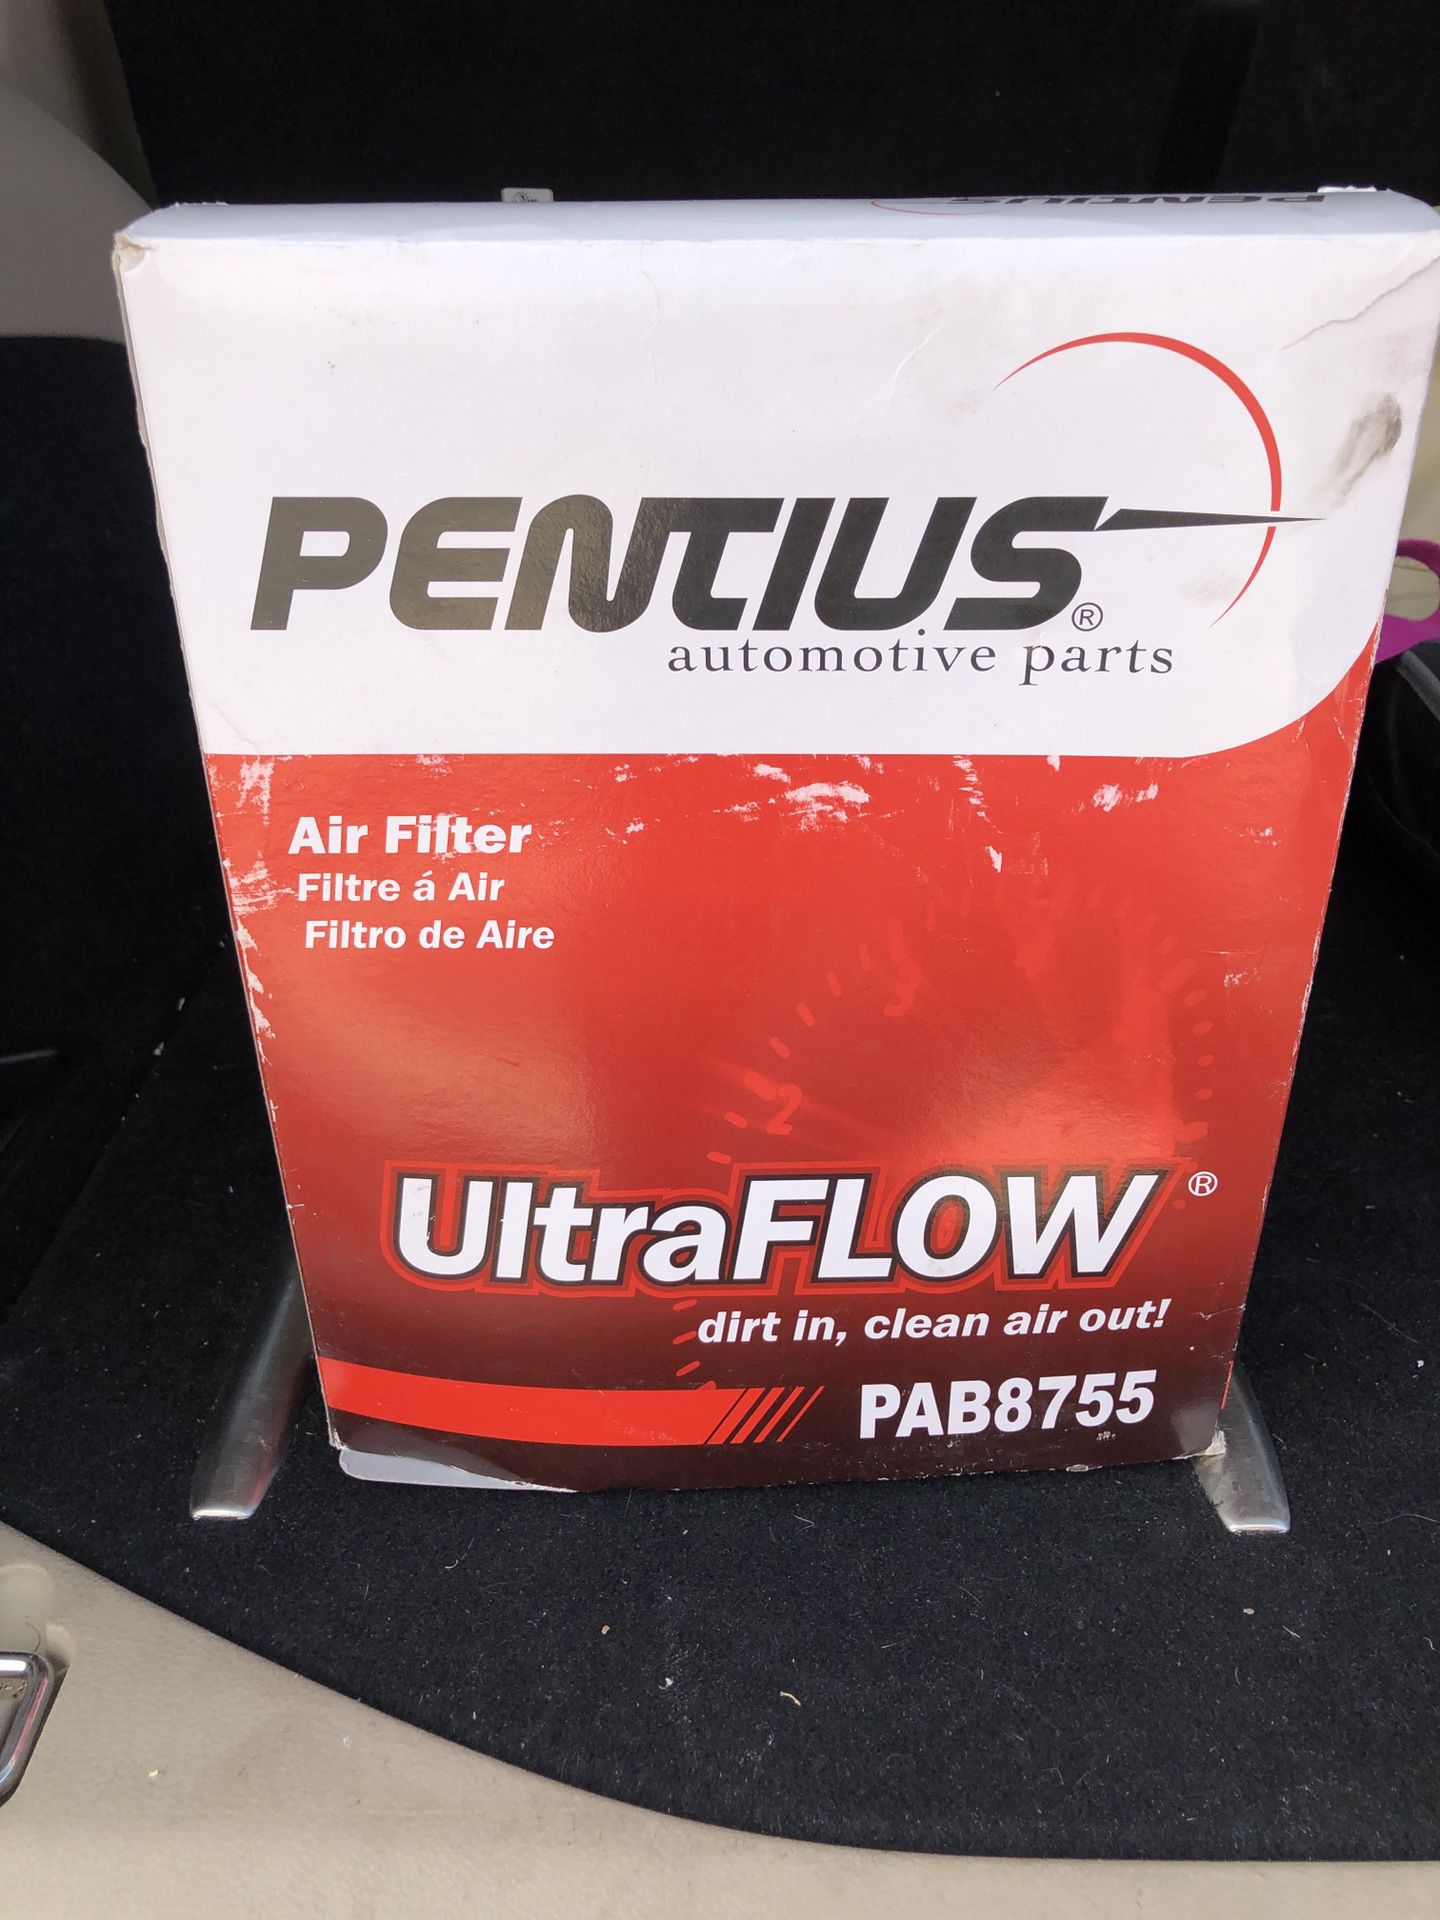 Air filter for Chevy Silverado Gas